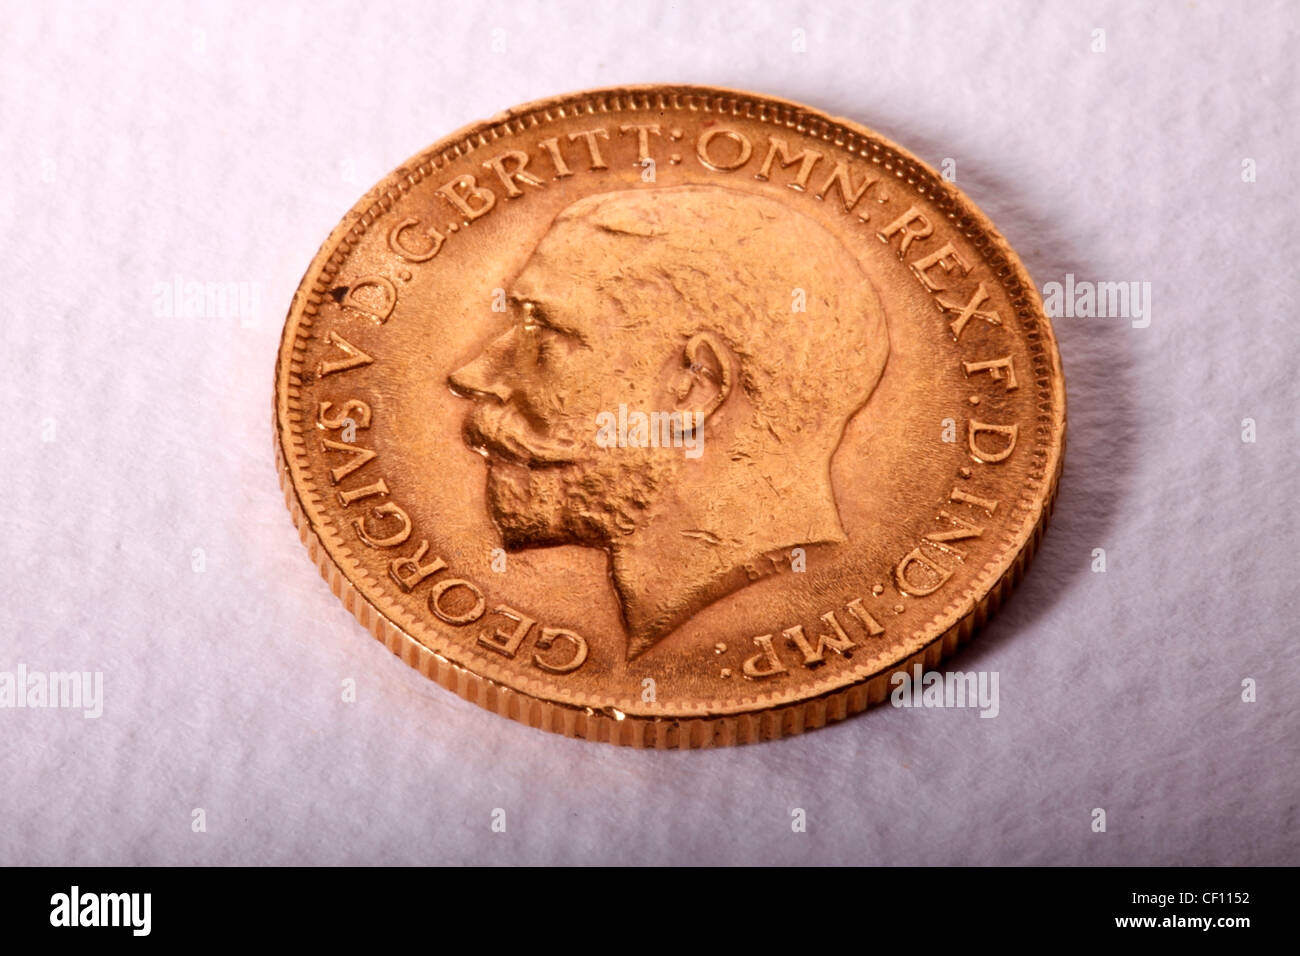 GOLD SOVEREIGN COIN Stock Photo